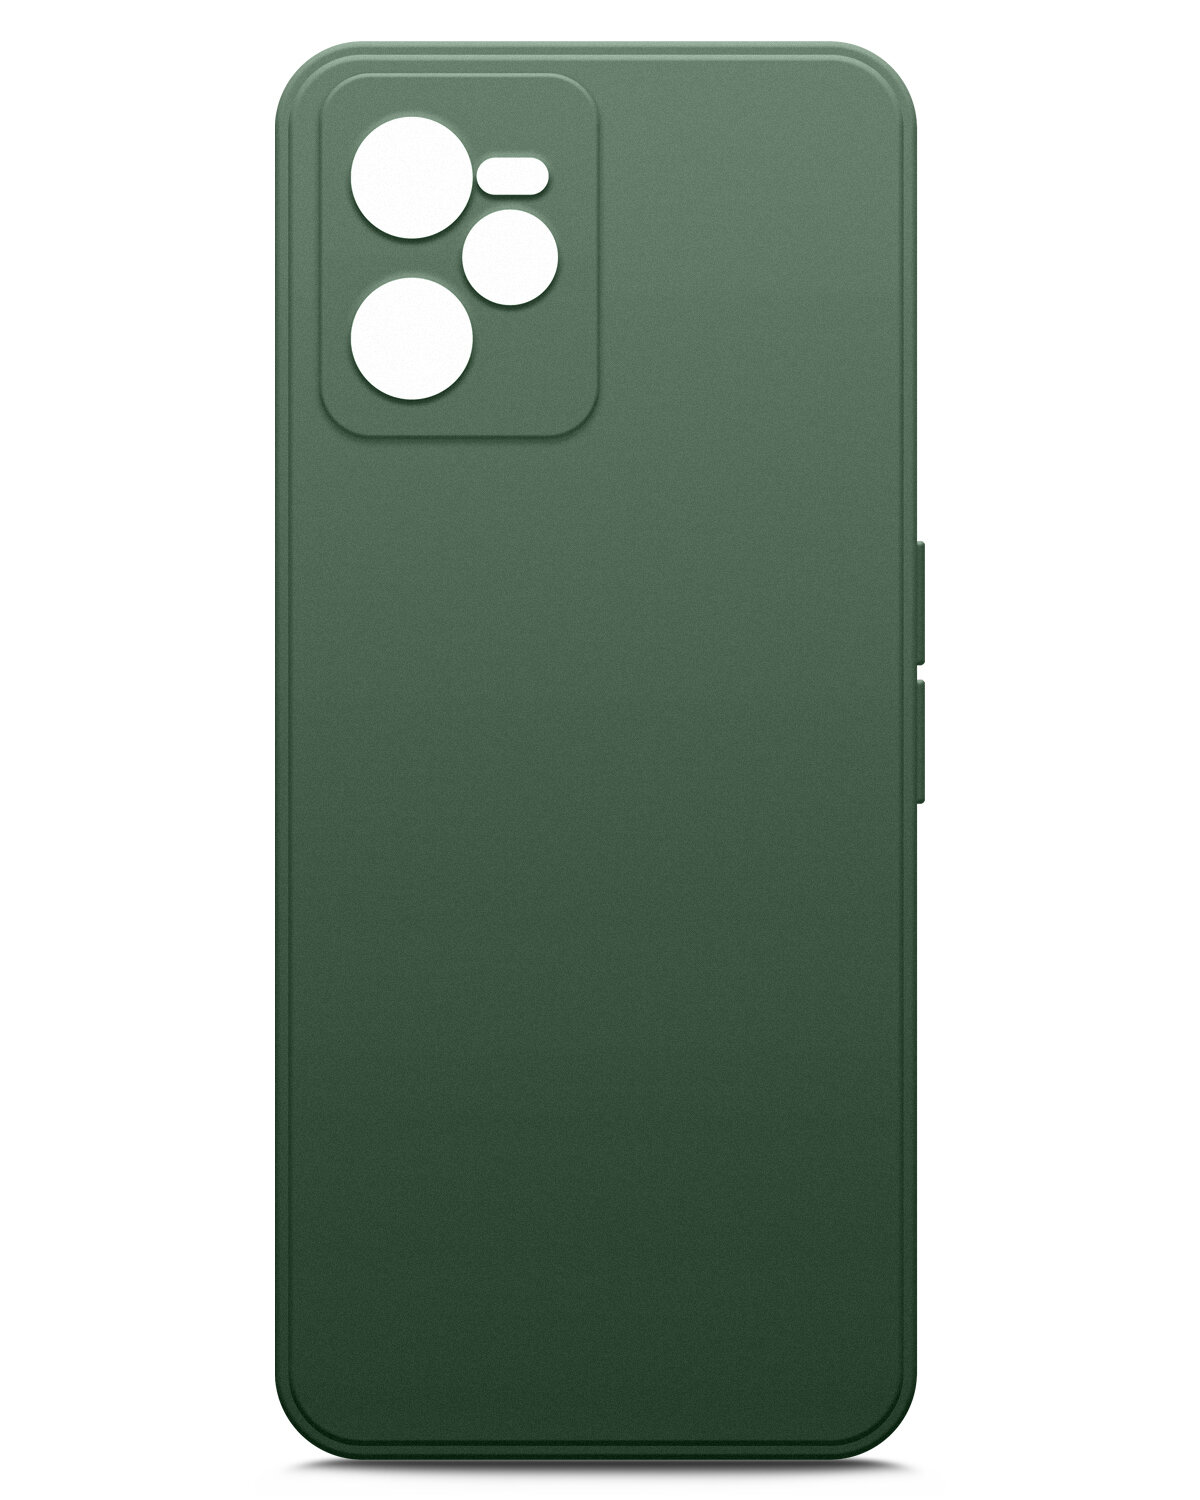 Чехол на Realme C35 (Реалми С35) силиконовый с защитной подкладкой из микрофибры, зеленый опал, Miuko